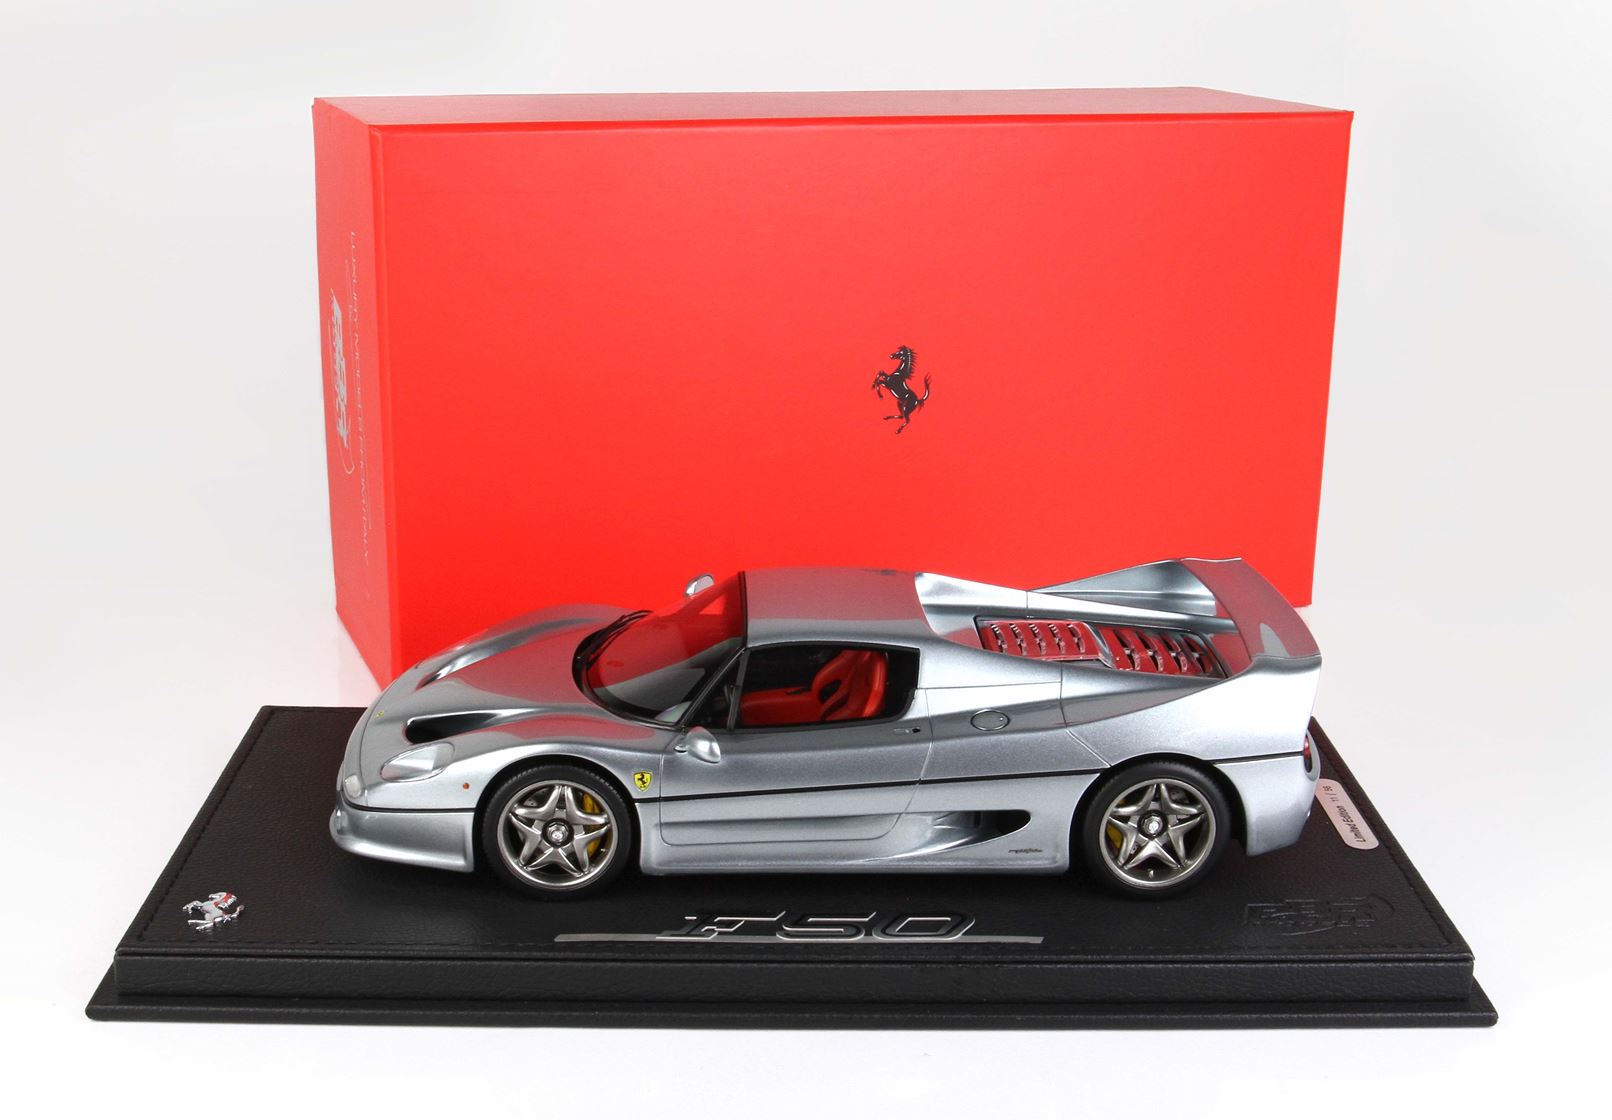 BBR Ferrari F50 1:18 scale Metalic Titanium Grey